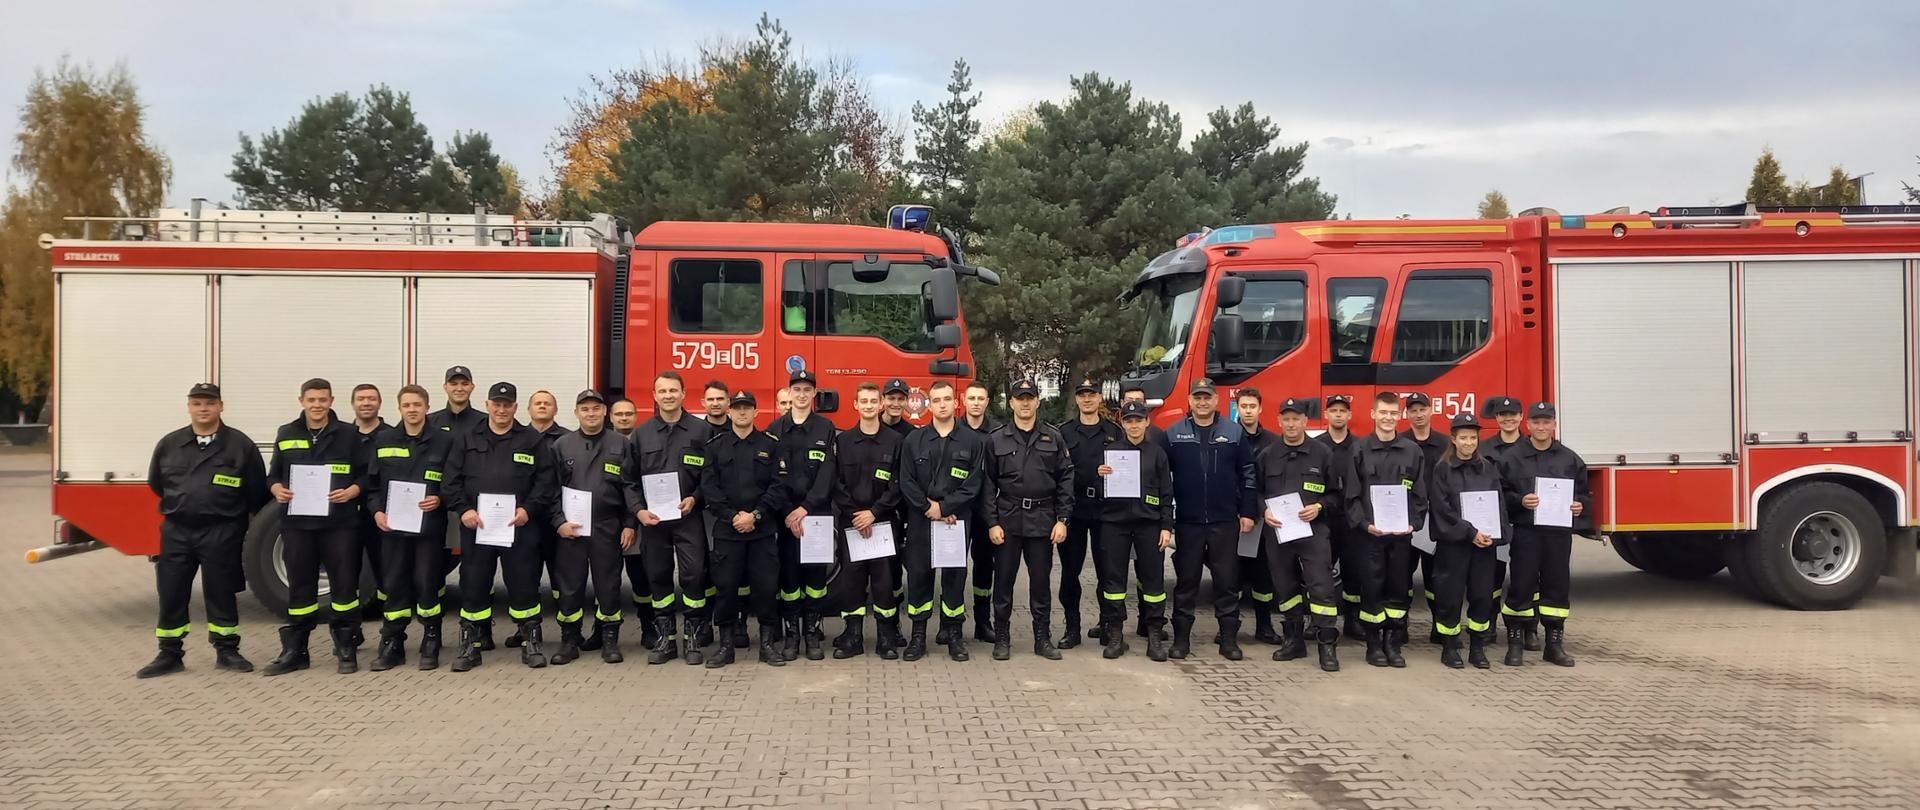 Zdjęcie ilustruje grupę strażaków ratowników OSP w umundurowaniu specjalnym, którzy ukończyli i odebrali zaświadczenia o ukończeniu szkolenia podstawowego. Strażacy stoją w dwuszeregu na tle dwóch pojazdów pożarniczych średnich GBA. Pomiędzy druhami stoją trzej funkcjonariusze KP PSP w Zduńskiej Woli w umundurowaniu koszarowym dowódczo-sztabowym, którzy wręczali zaświadczenia oraz druh Prezes Zarządu Oddziału Powiatowego ZOSP RP w Zduńskiej Woli.